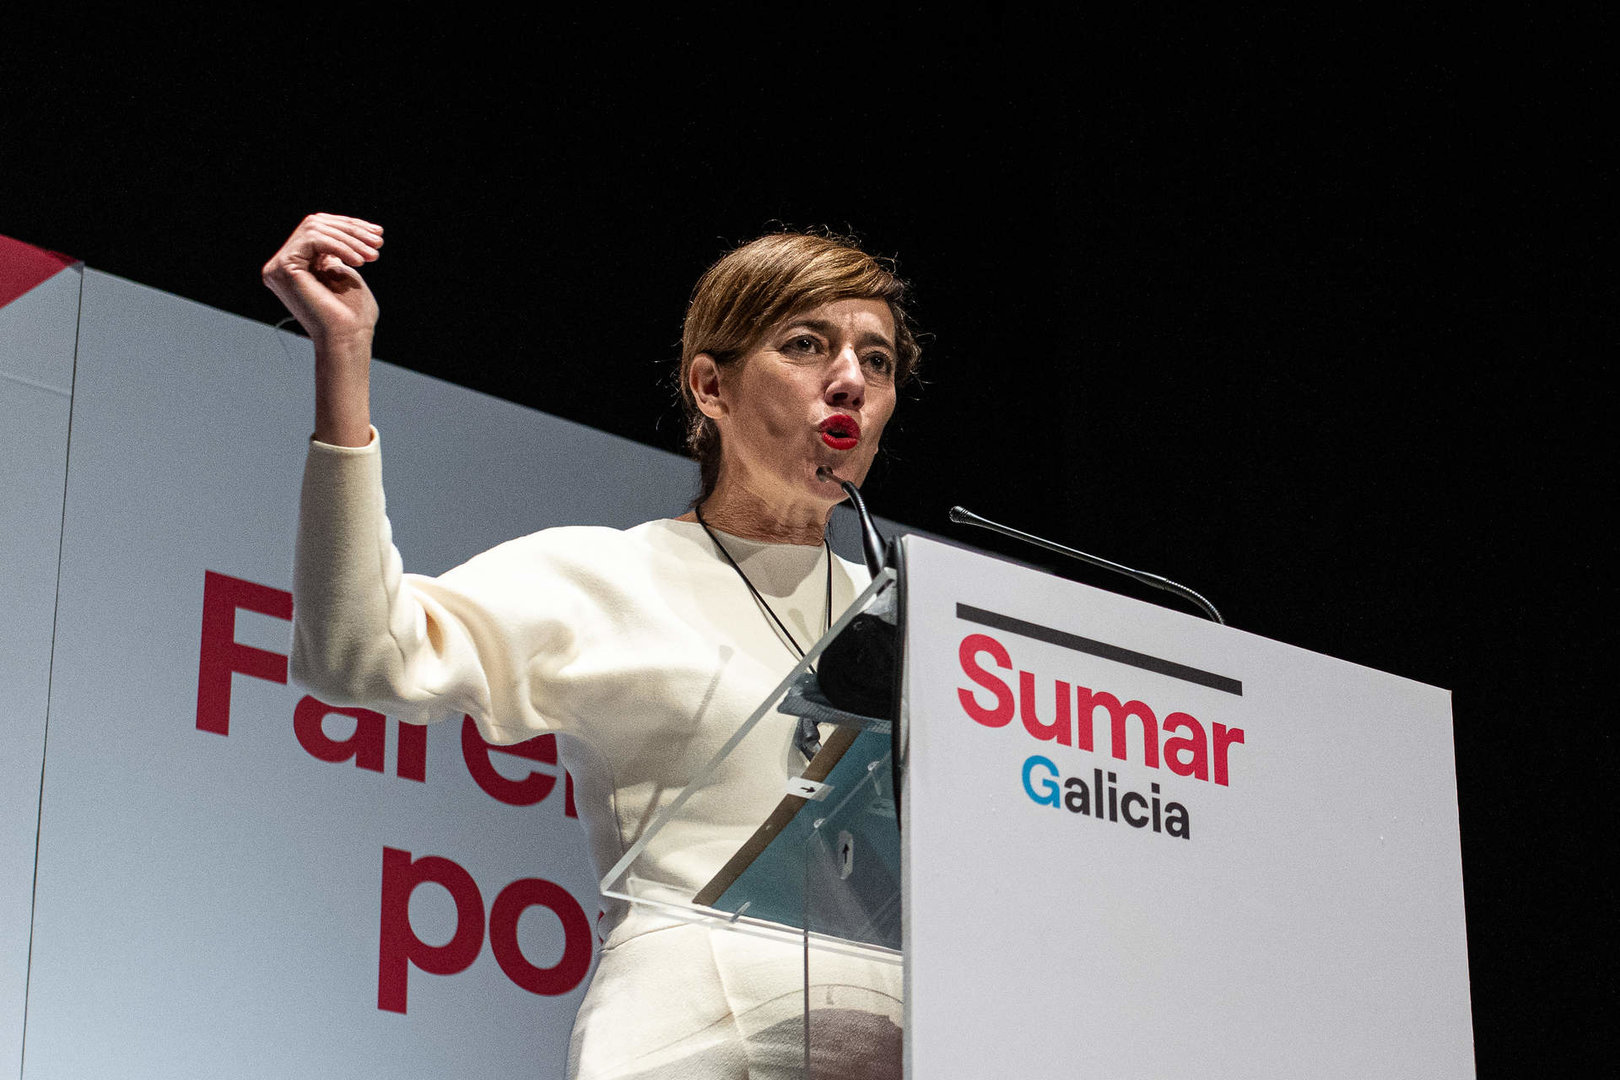 La candidata de Sumar Galicia a la Presidencia de la Xunta, Marta Lois, interviene durante un acto de campaña electoral de Sumar Galicia, en el cine Elma, a 11 de febrero de 2024, en A Pobra do Caramiñal, A Coruña, Galicia. 